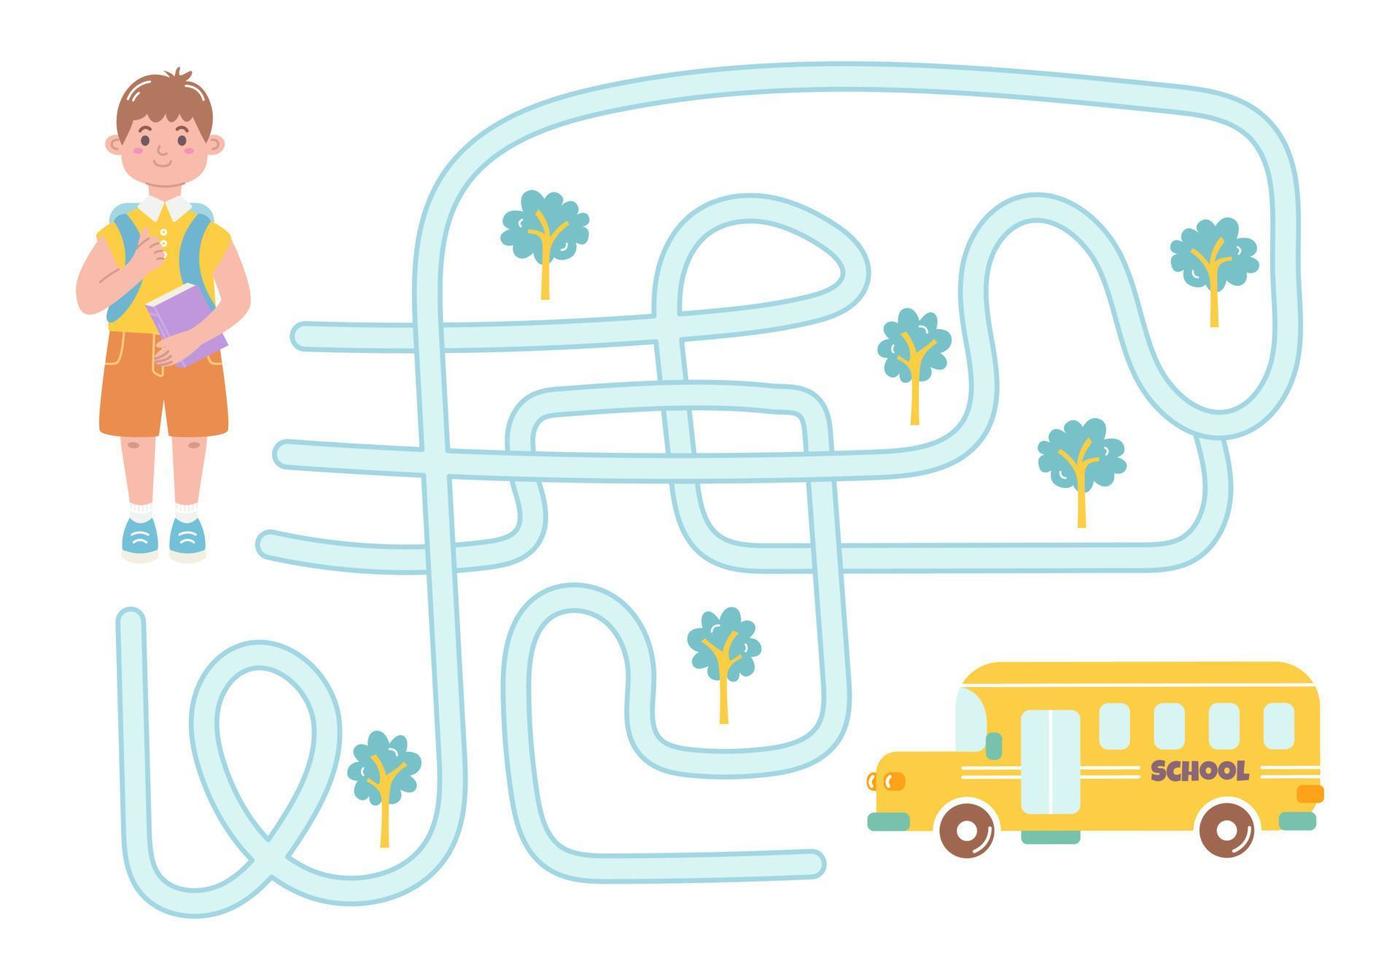 labyrinthe, aidez le garçon à trouver le bon chemin vers le bus scolaire. quête logique pour les enfants. illustration mignonne pour livres pour enfants, jeu éducatif vecteur